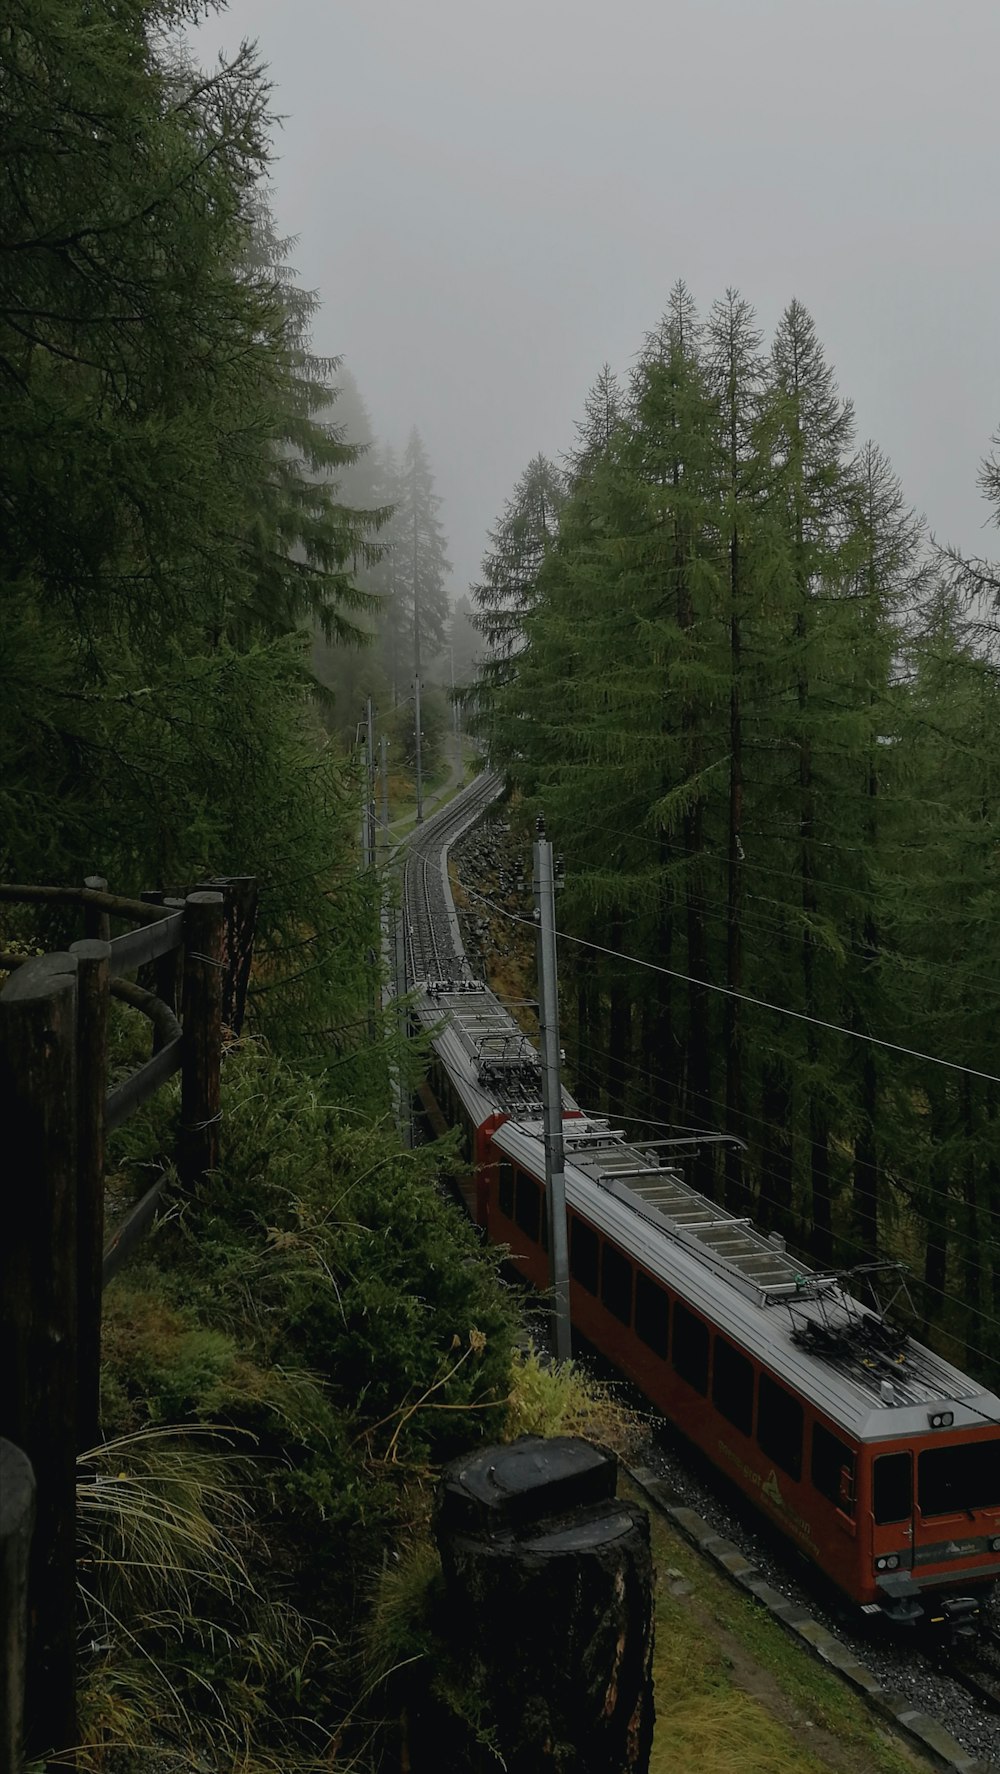 Zugbahn in der Nähe grüner Bäume tagsüber